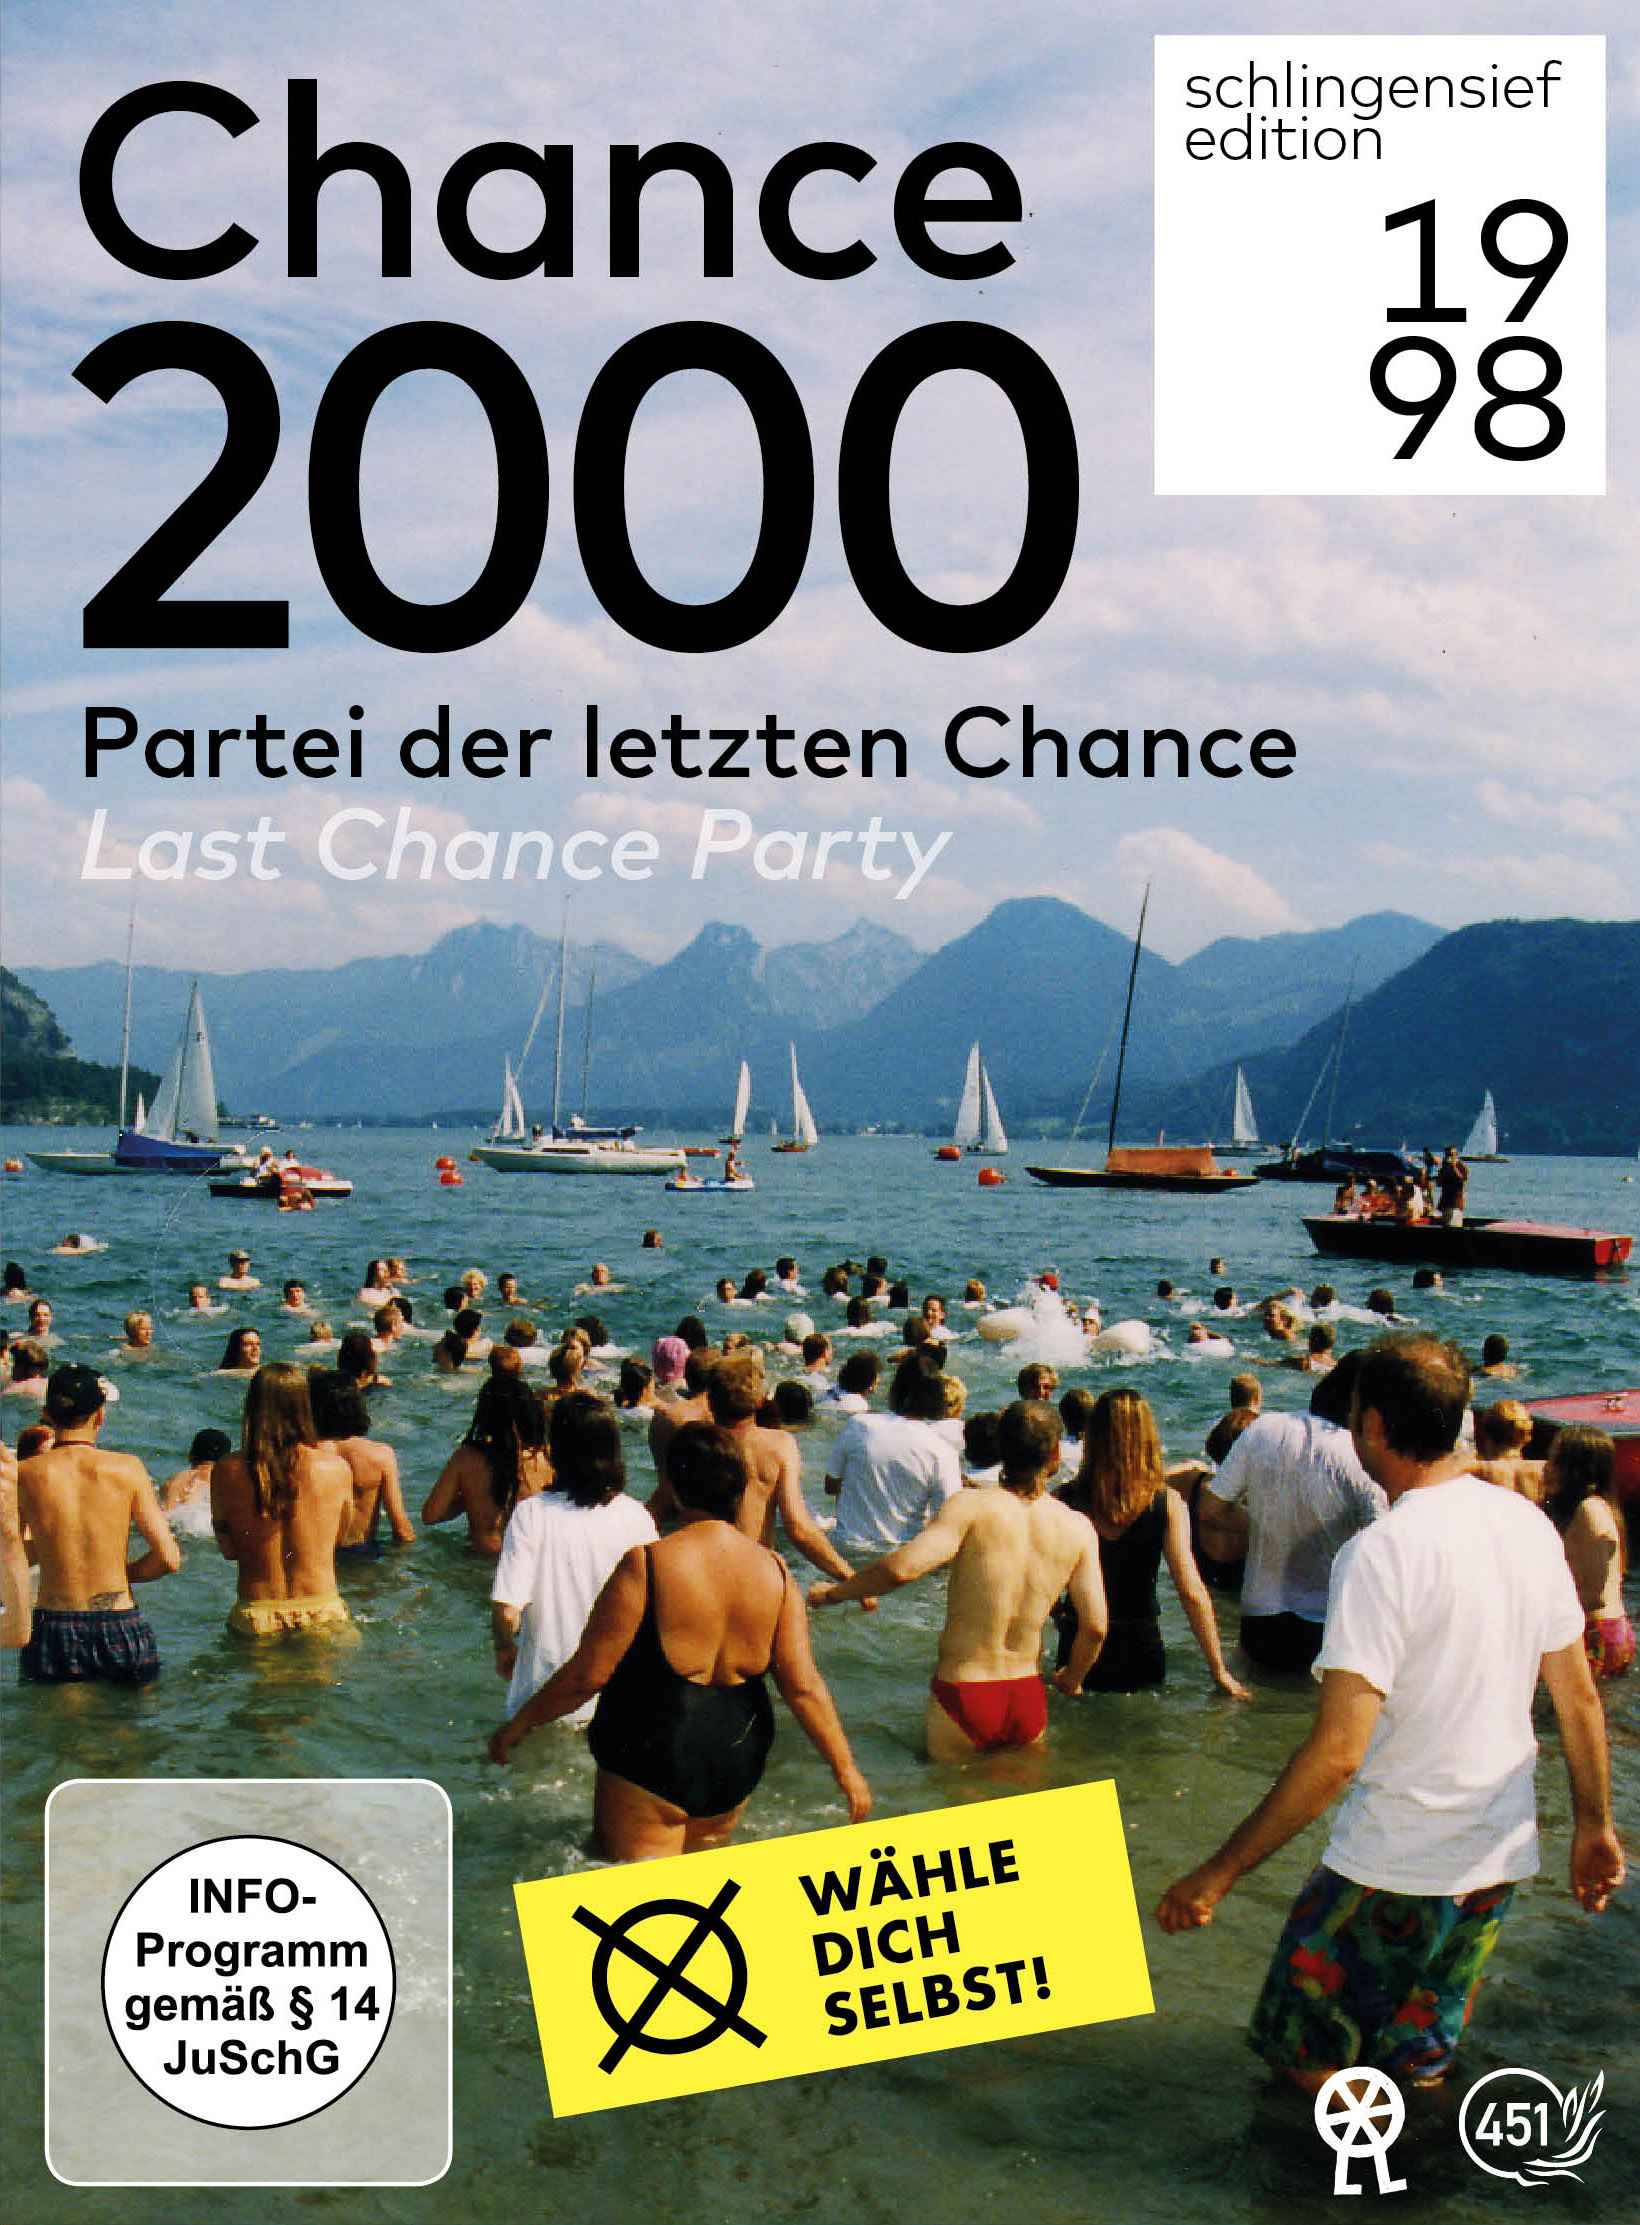 Chance 2000 - Partei der DVD letzten Chance